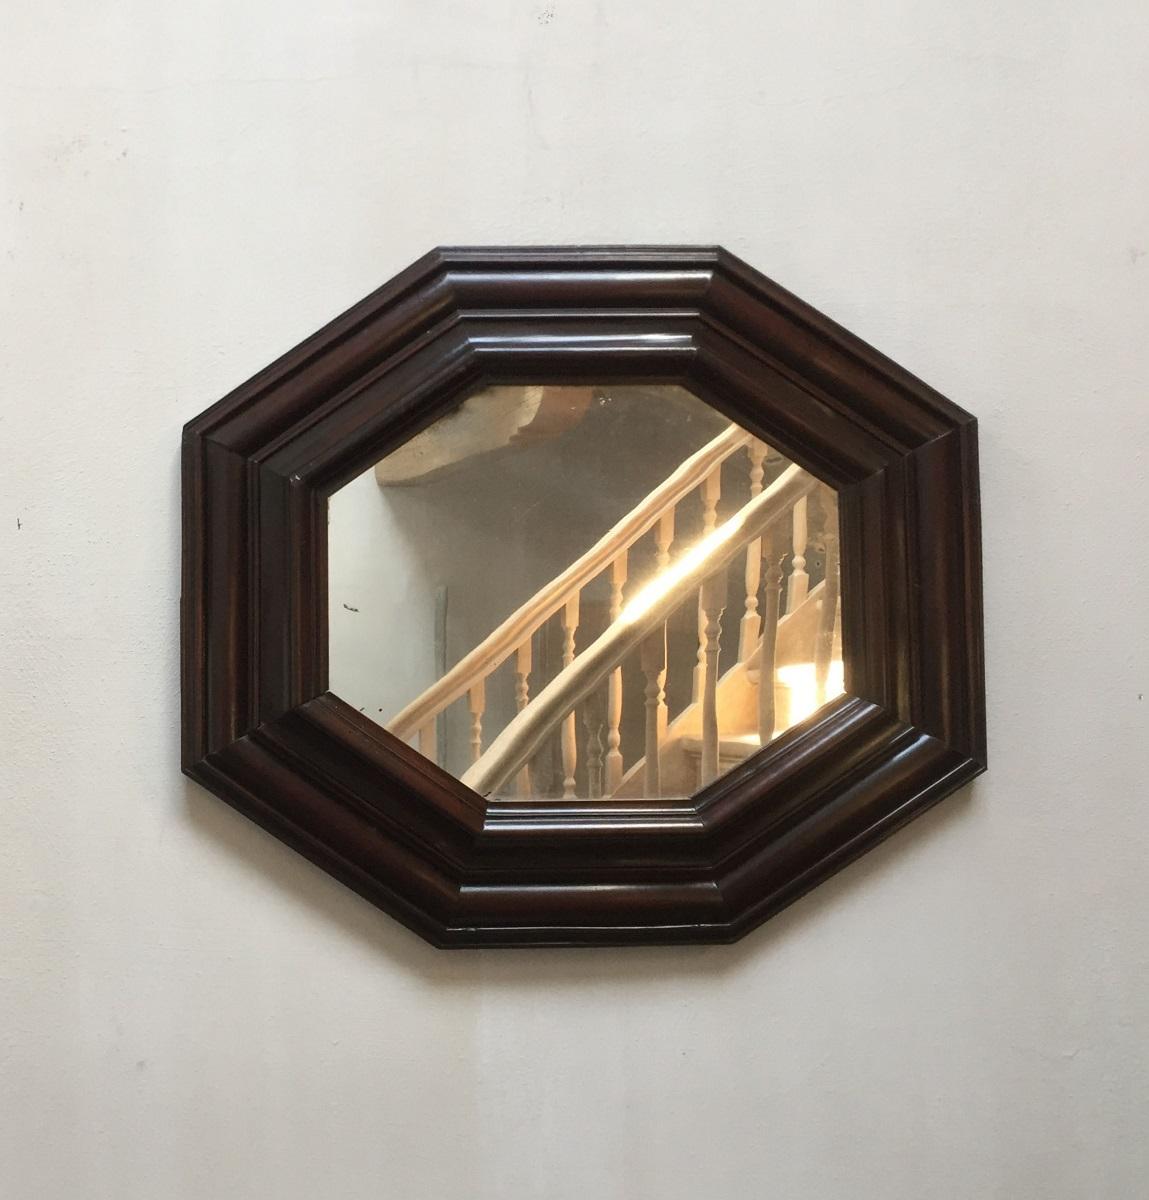 Miroir octogonal italien en noyer de la fin du XVIIIe siècle. Hormis quelques restaurations mineures, ce miroir est en parfait état et peut être suspendu dans les deux sens.